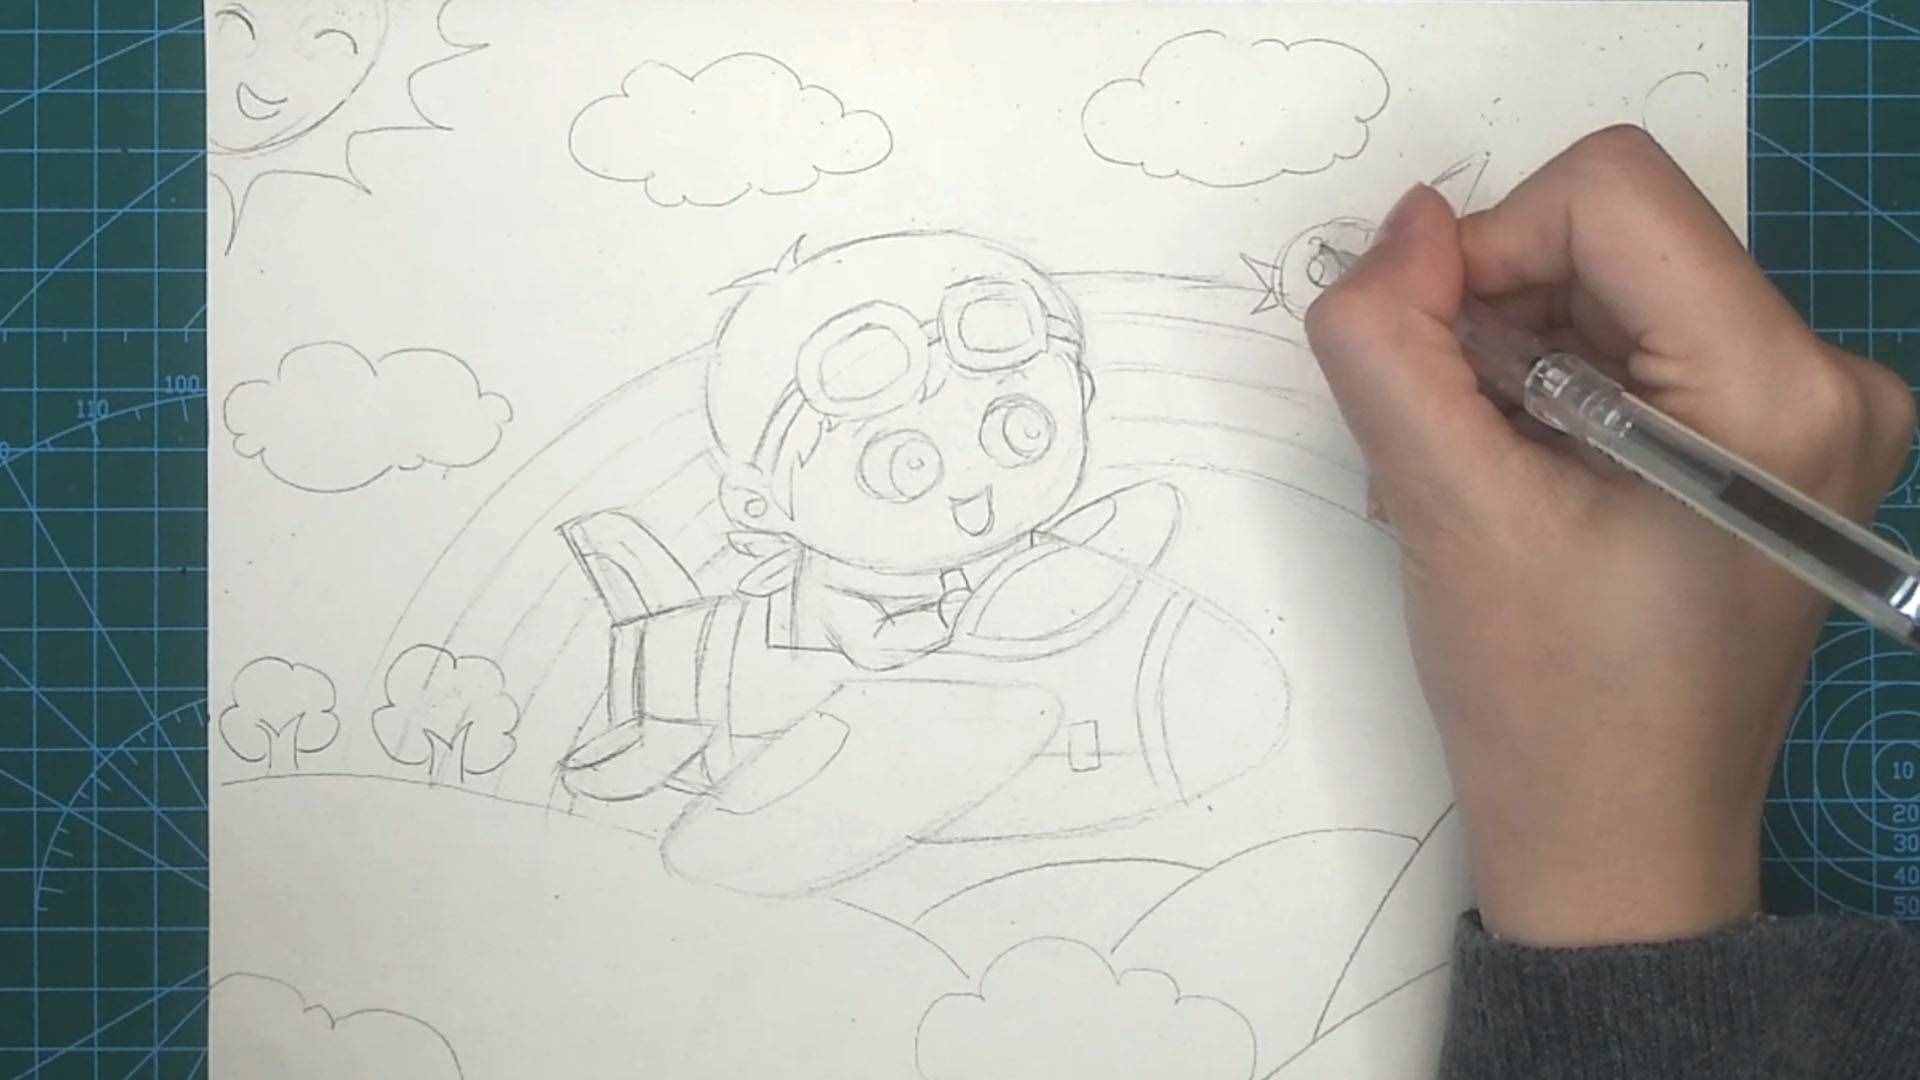 创意美术主题画丨我的梦想丨小小飞行员